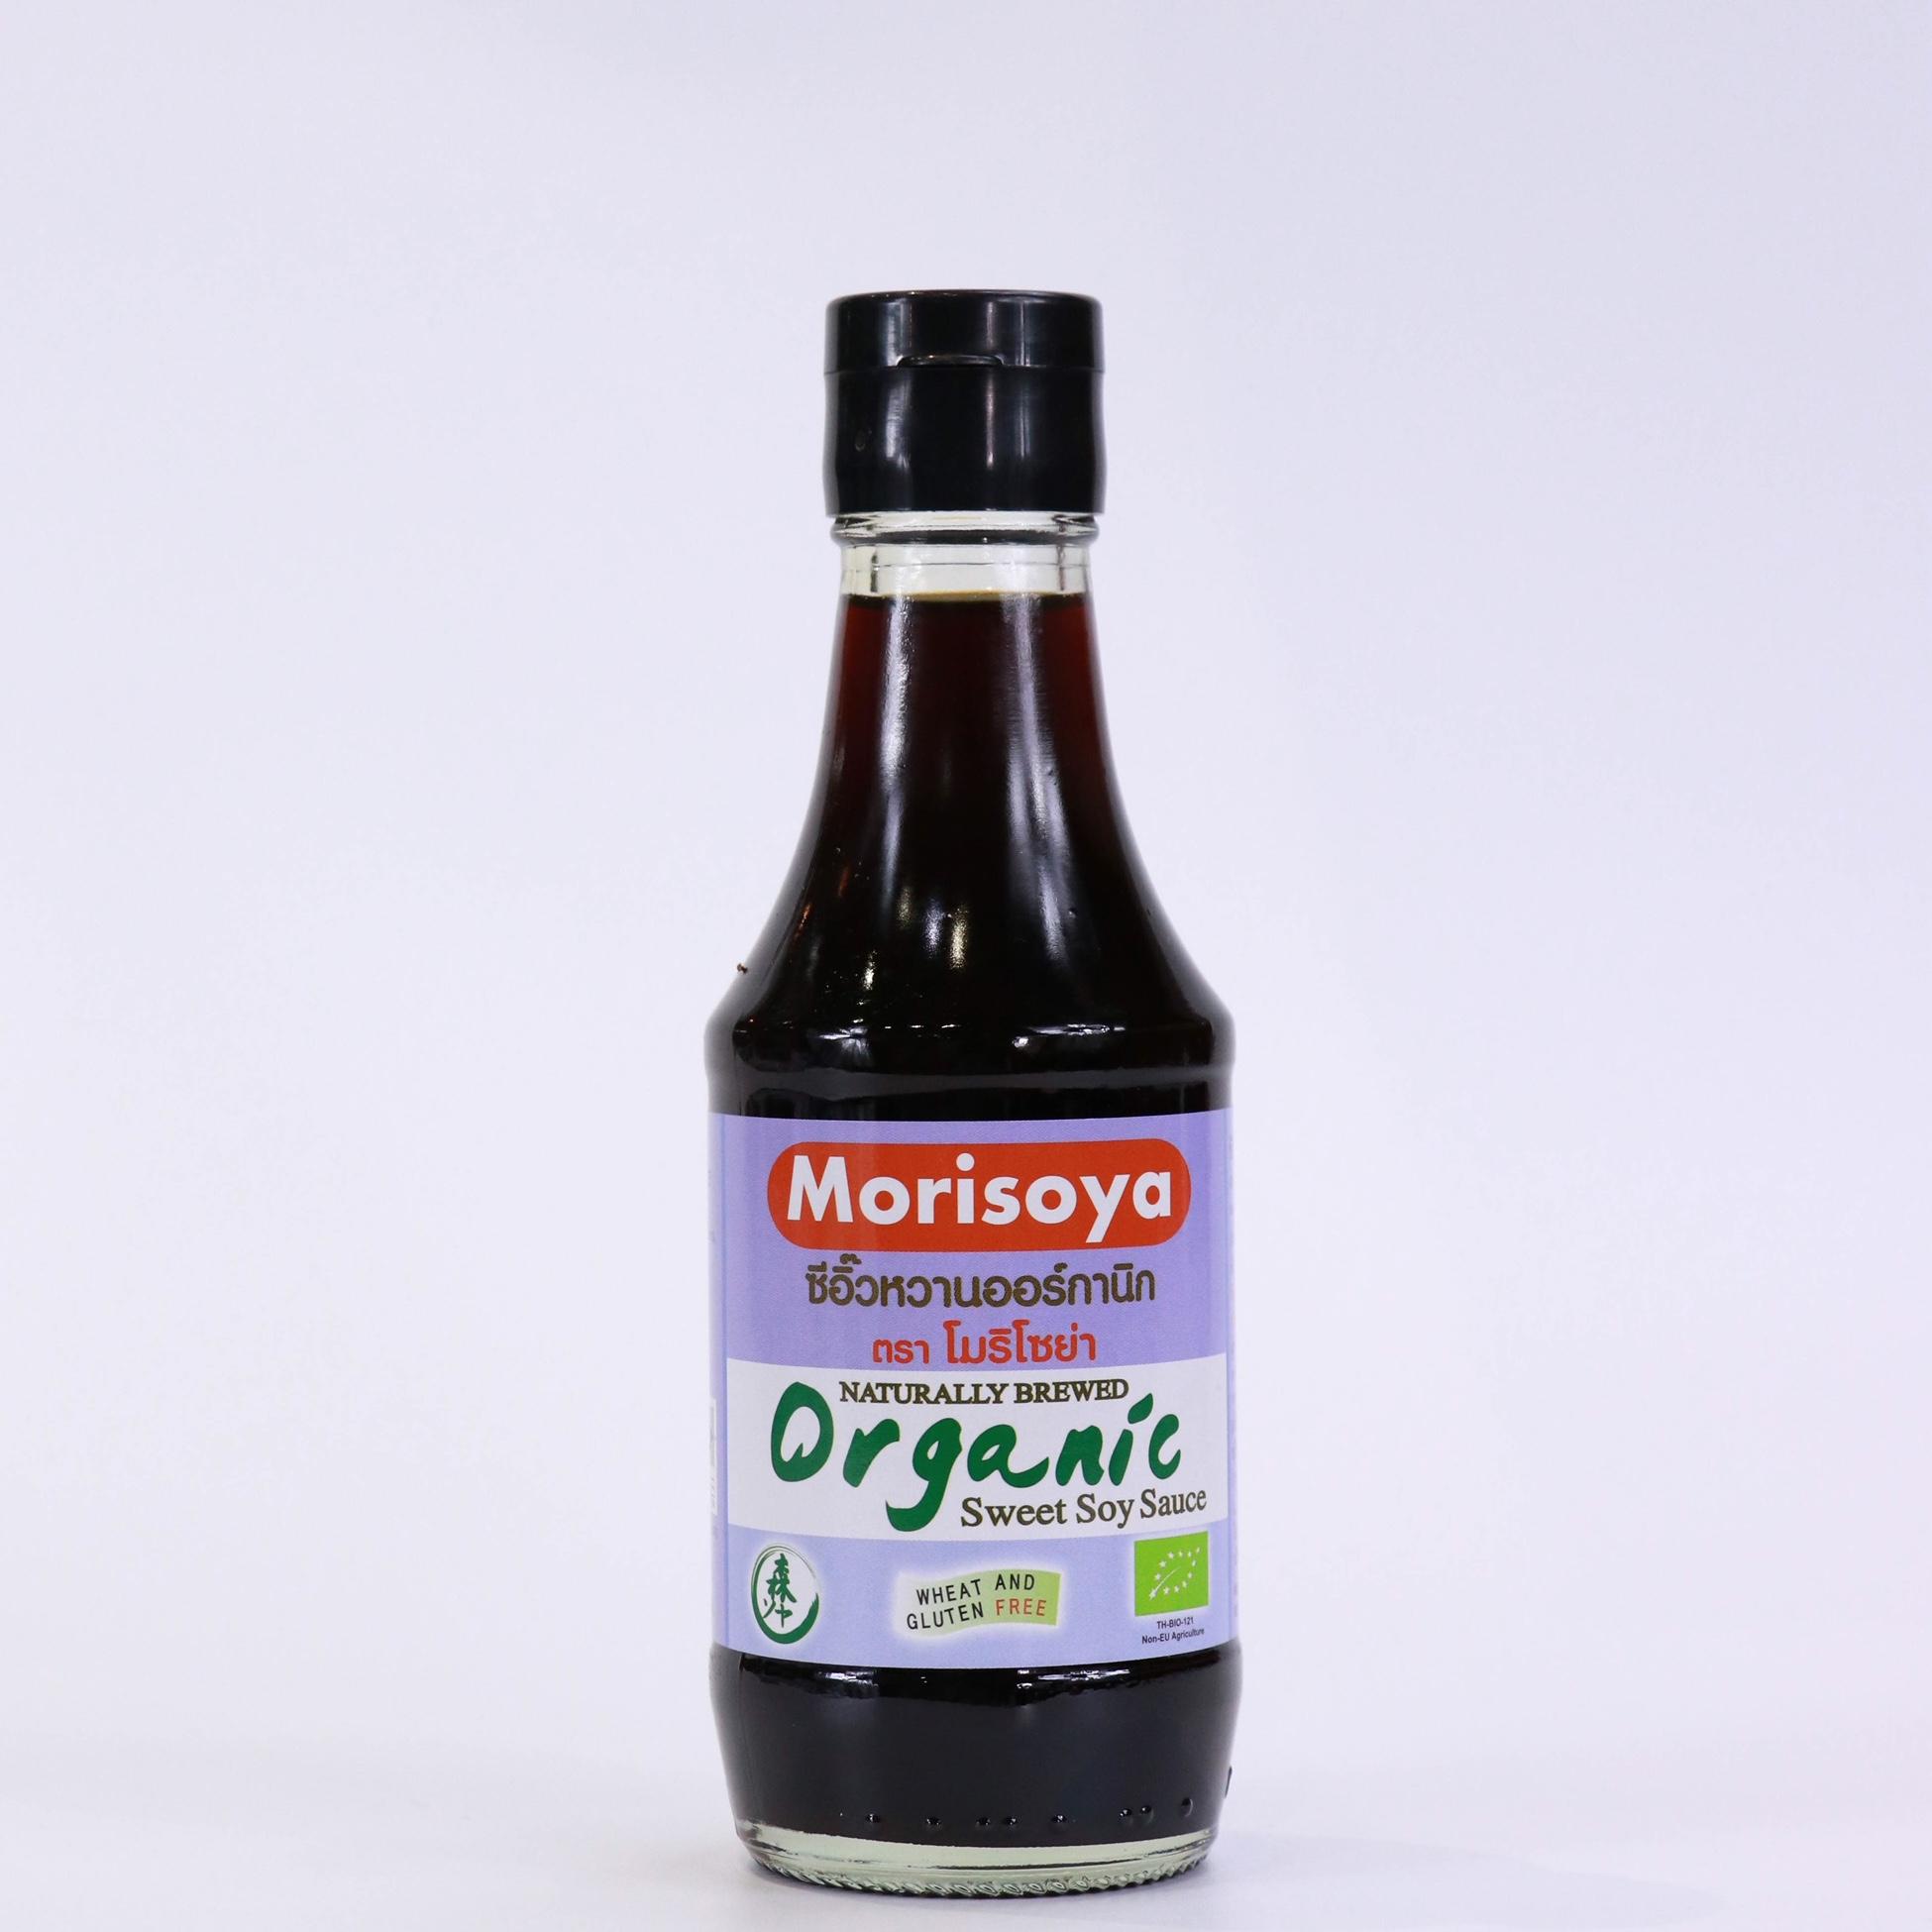 Morisoya ซีอิ๊วหวานออร์กานิค (Organic Sweet Soy Sauce) 200ml. หมักโดยวิธีธรรมชาติ ปลอดสารพิษและสารเคมี